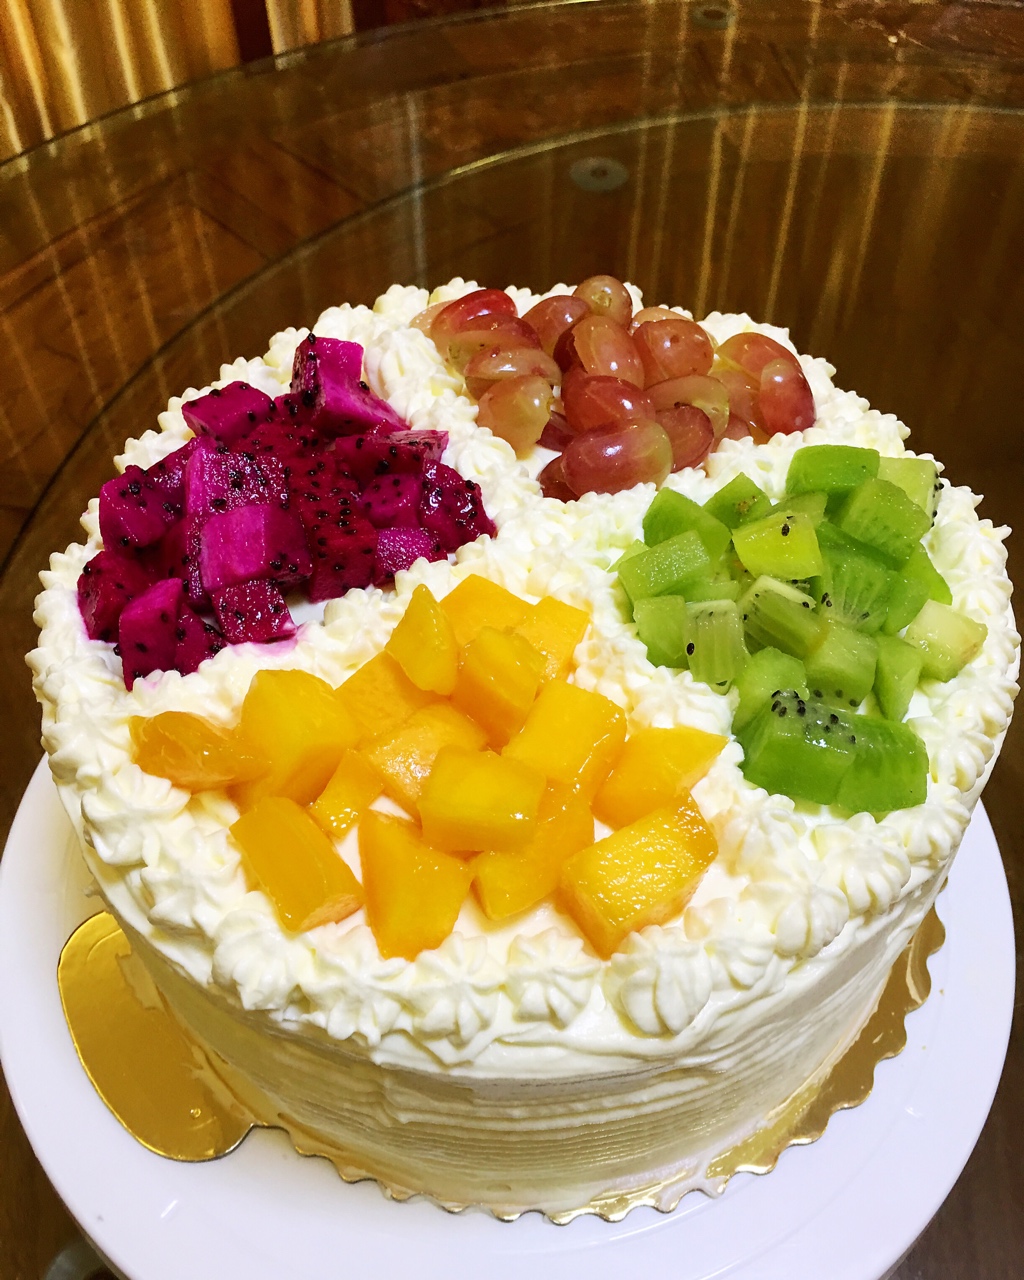 奇迹_rbpg做的8寸水果生日蛋糕